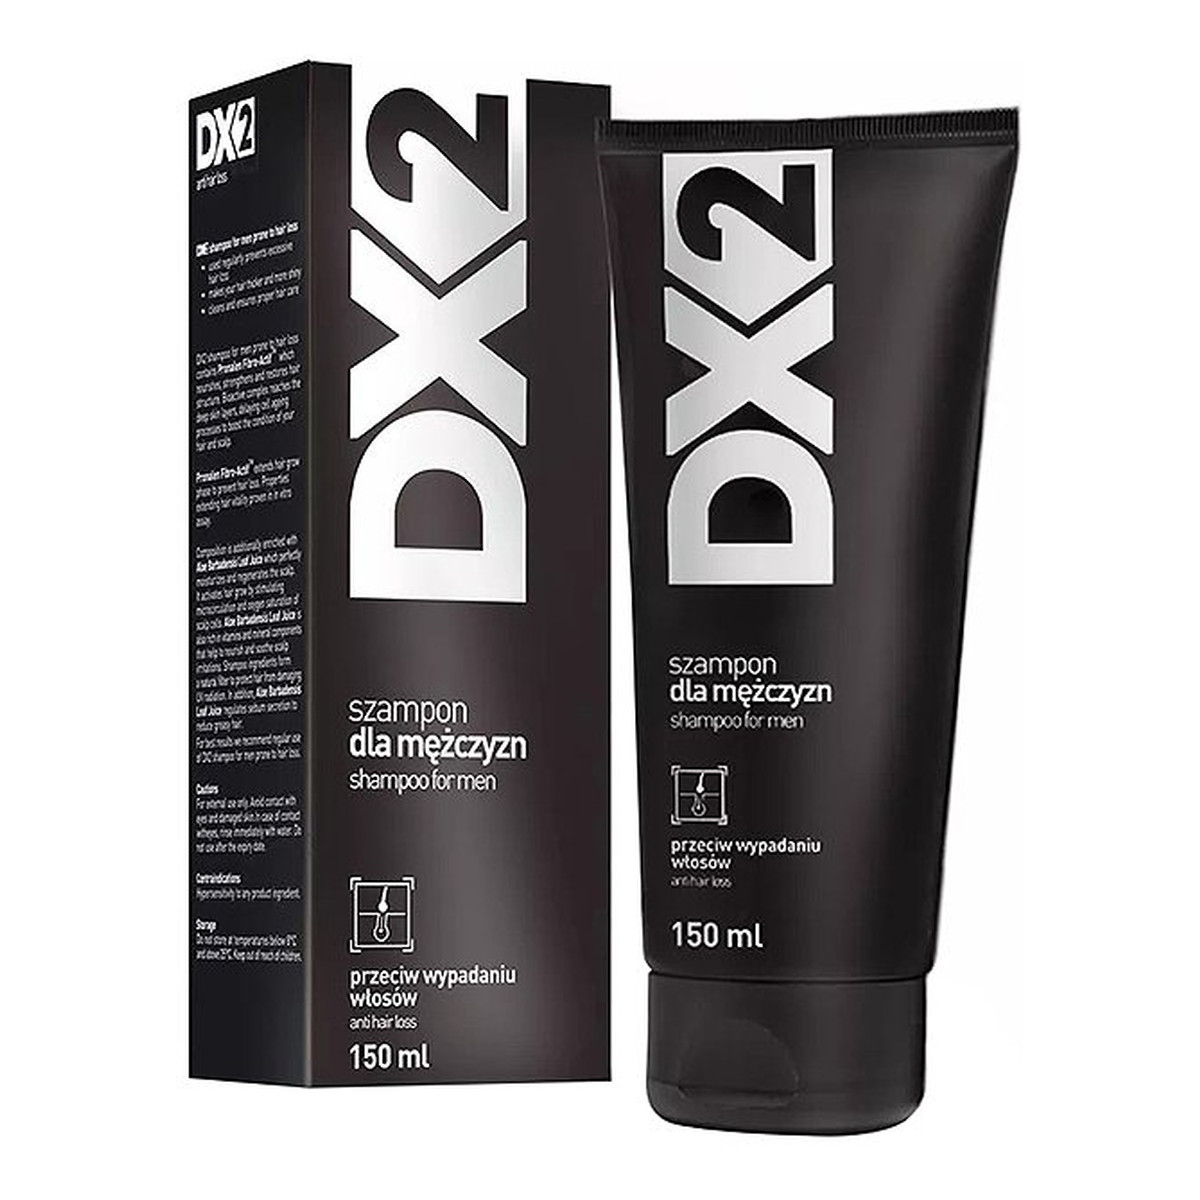 DX2 Szampon Przeciw Wypadaniu Włosów 150ml